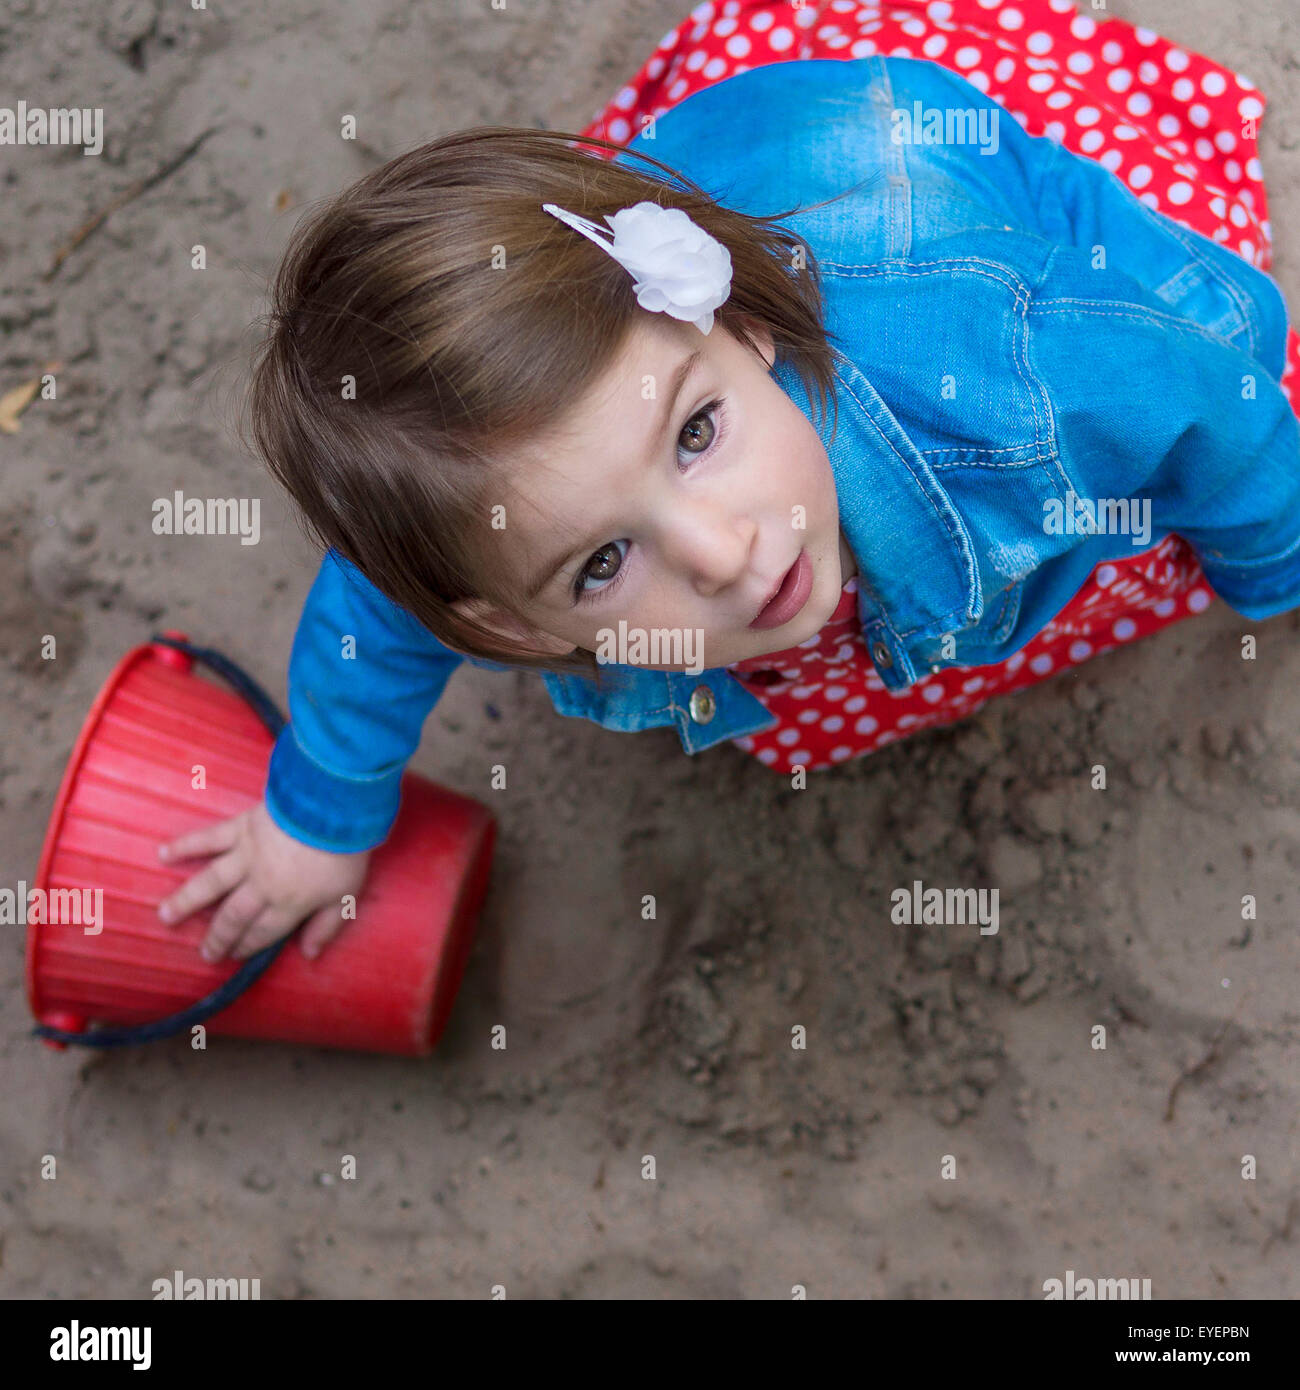 Bellissima bambina con occhi marroni nel contenitore di sabbia Foto Stock